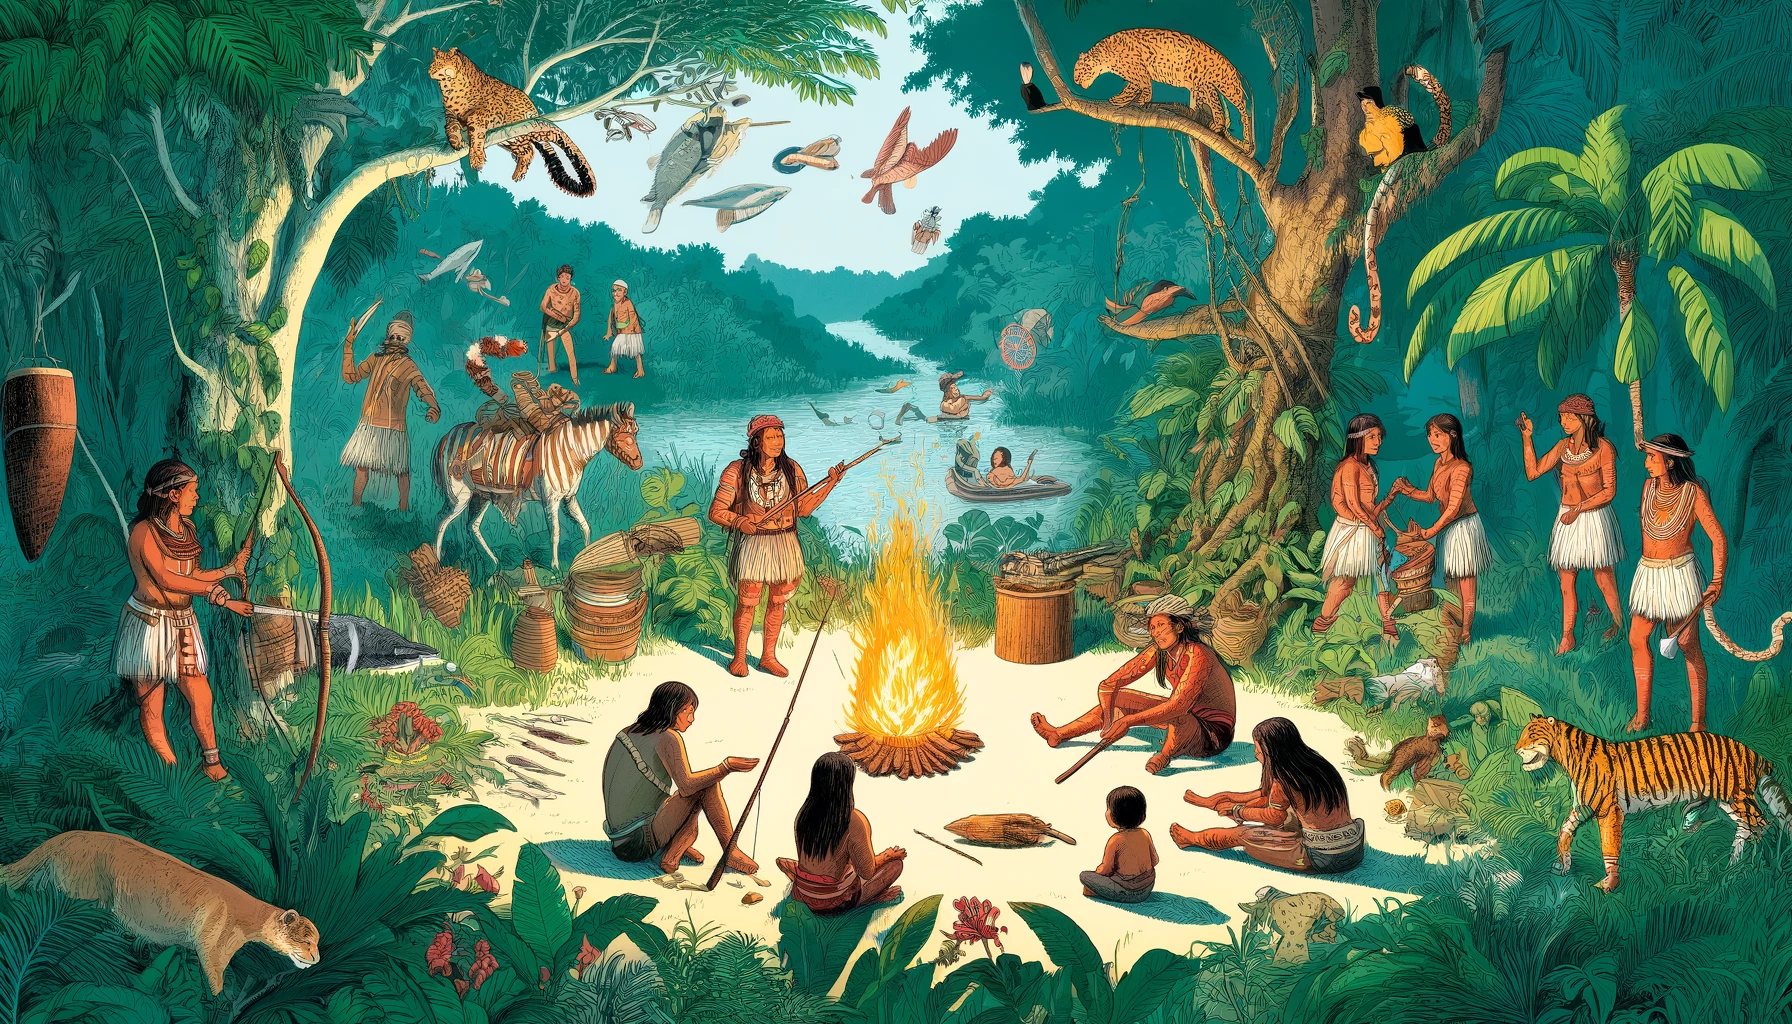 Ilustración de los guaraníes en su entorno natural, pescando, cultivando y contando historias en un bosque exuberante con plantas y animales.